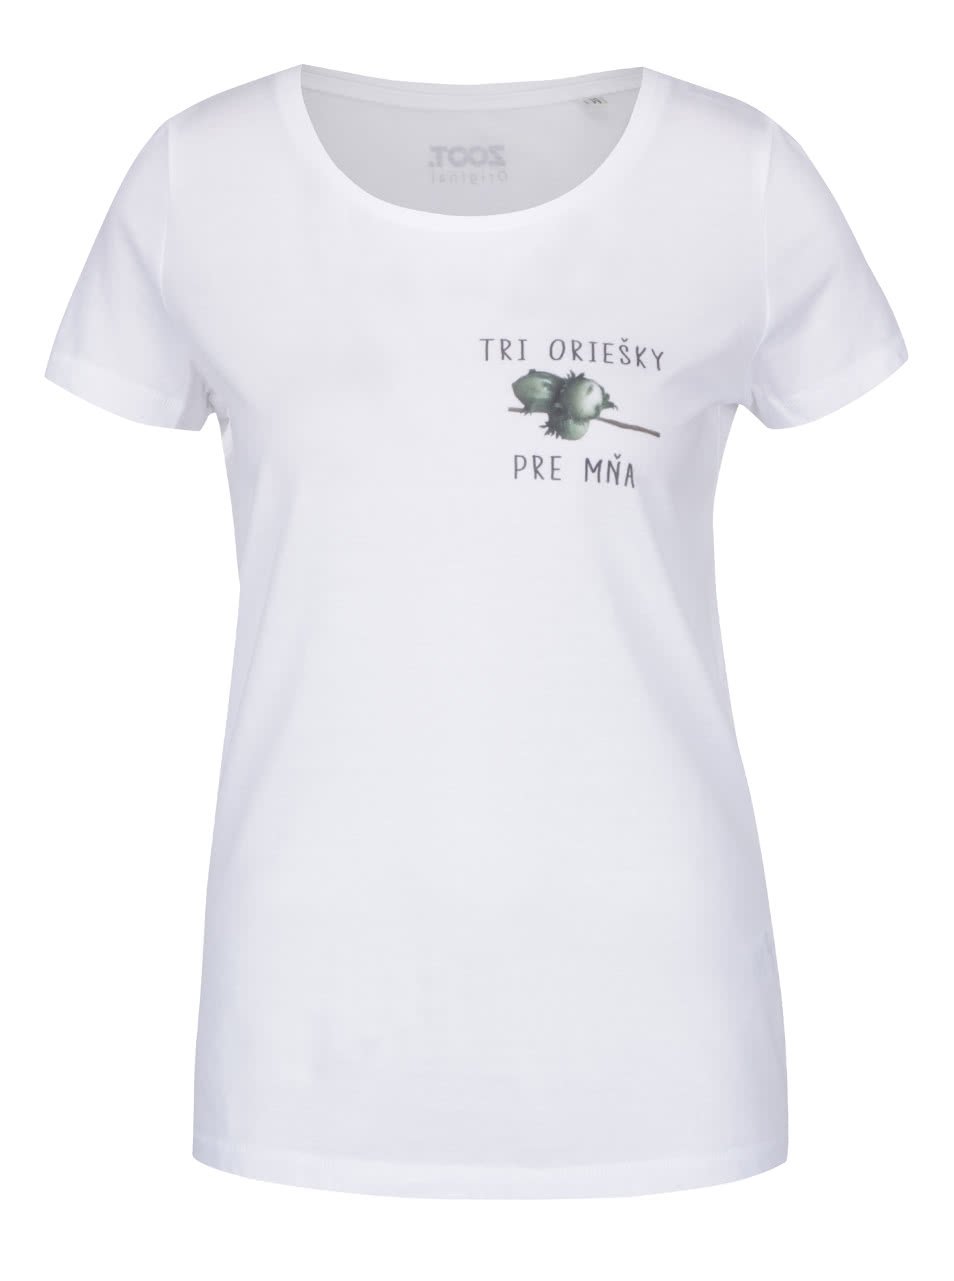 Bílé dámské tričko ZOOT Originál Tri oriešky pre mňa